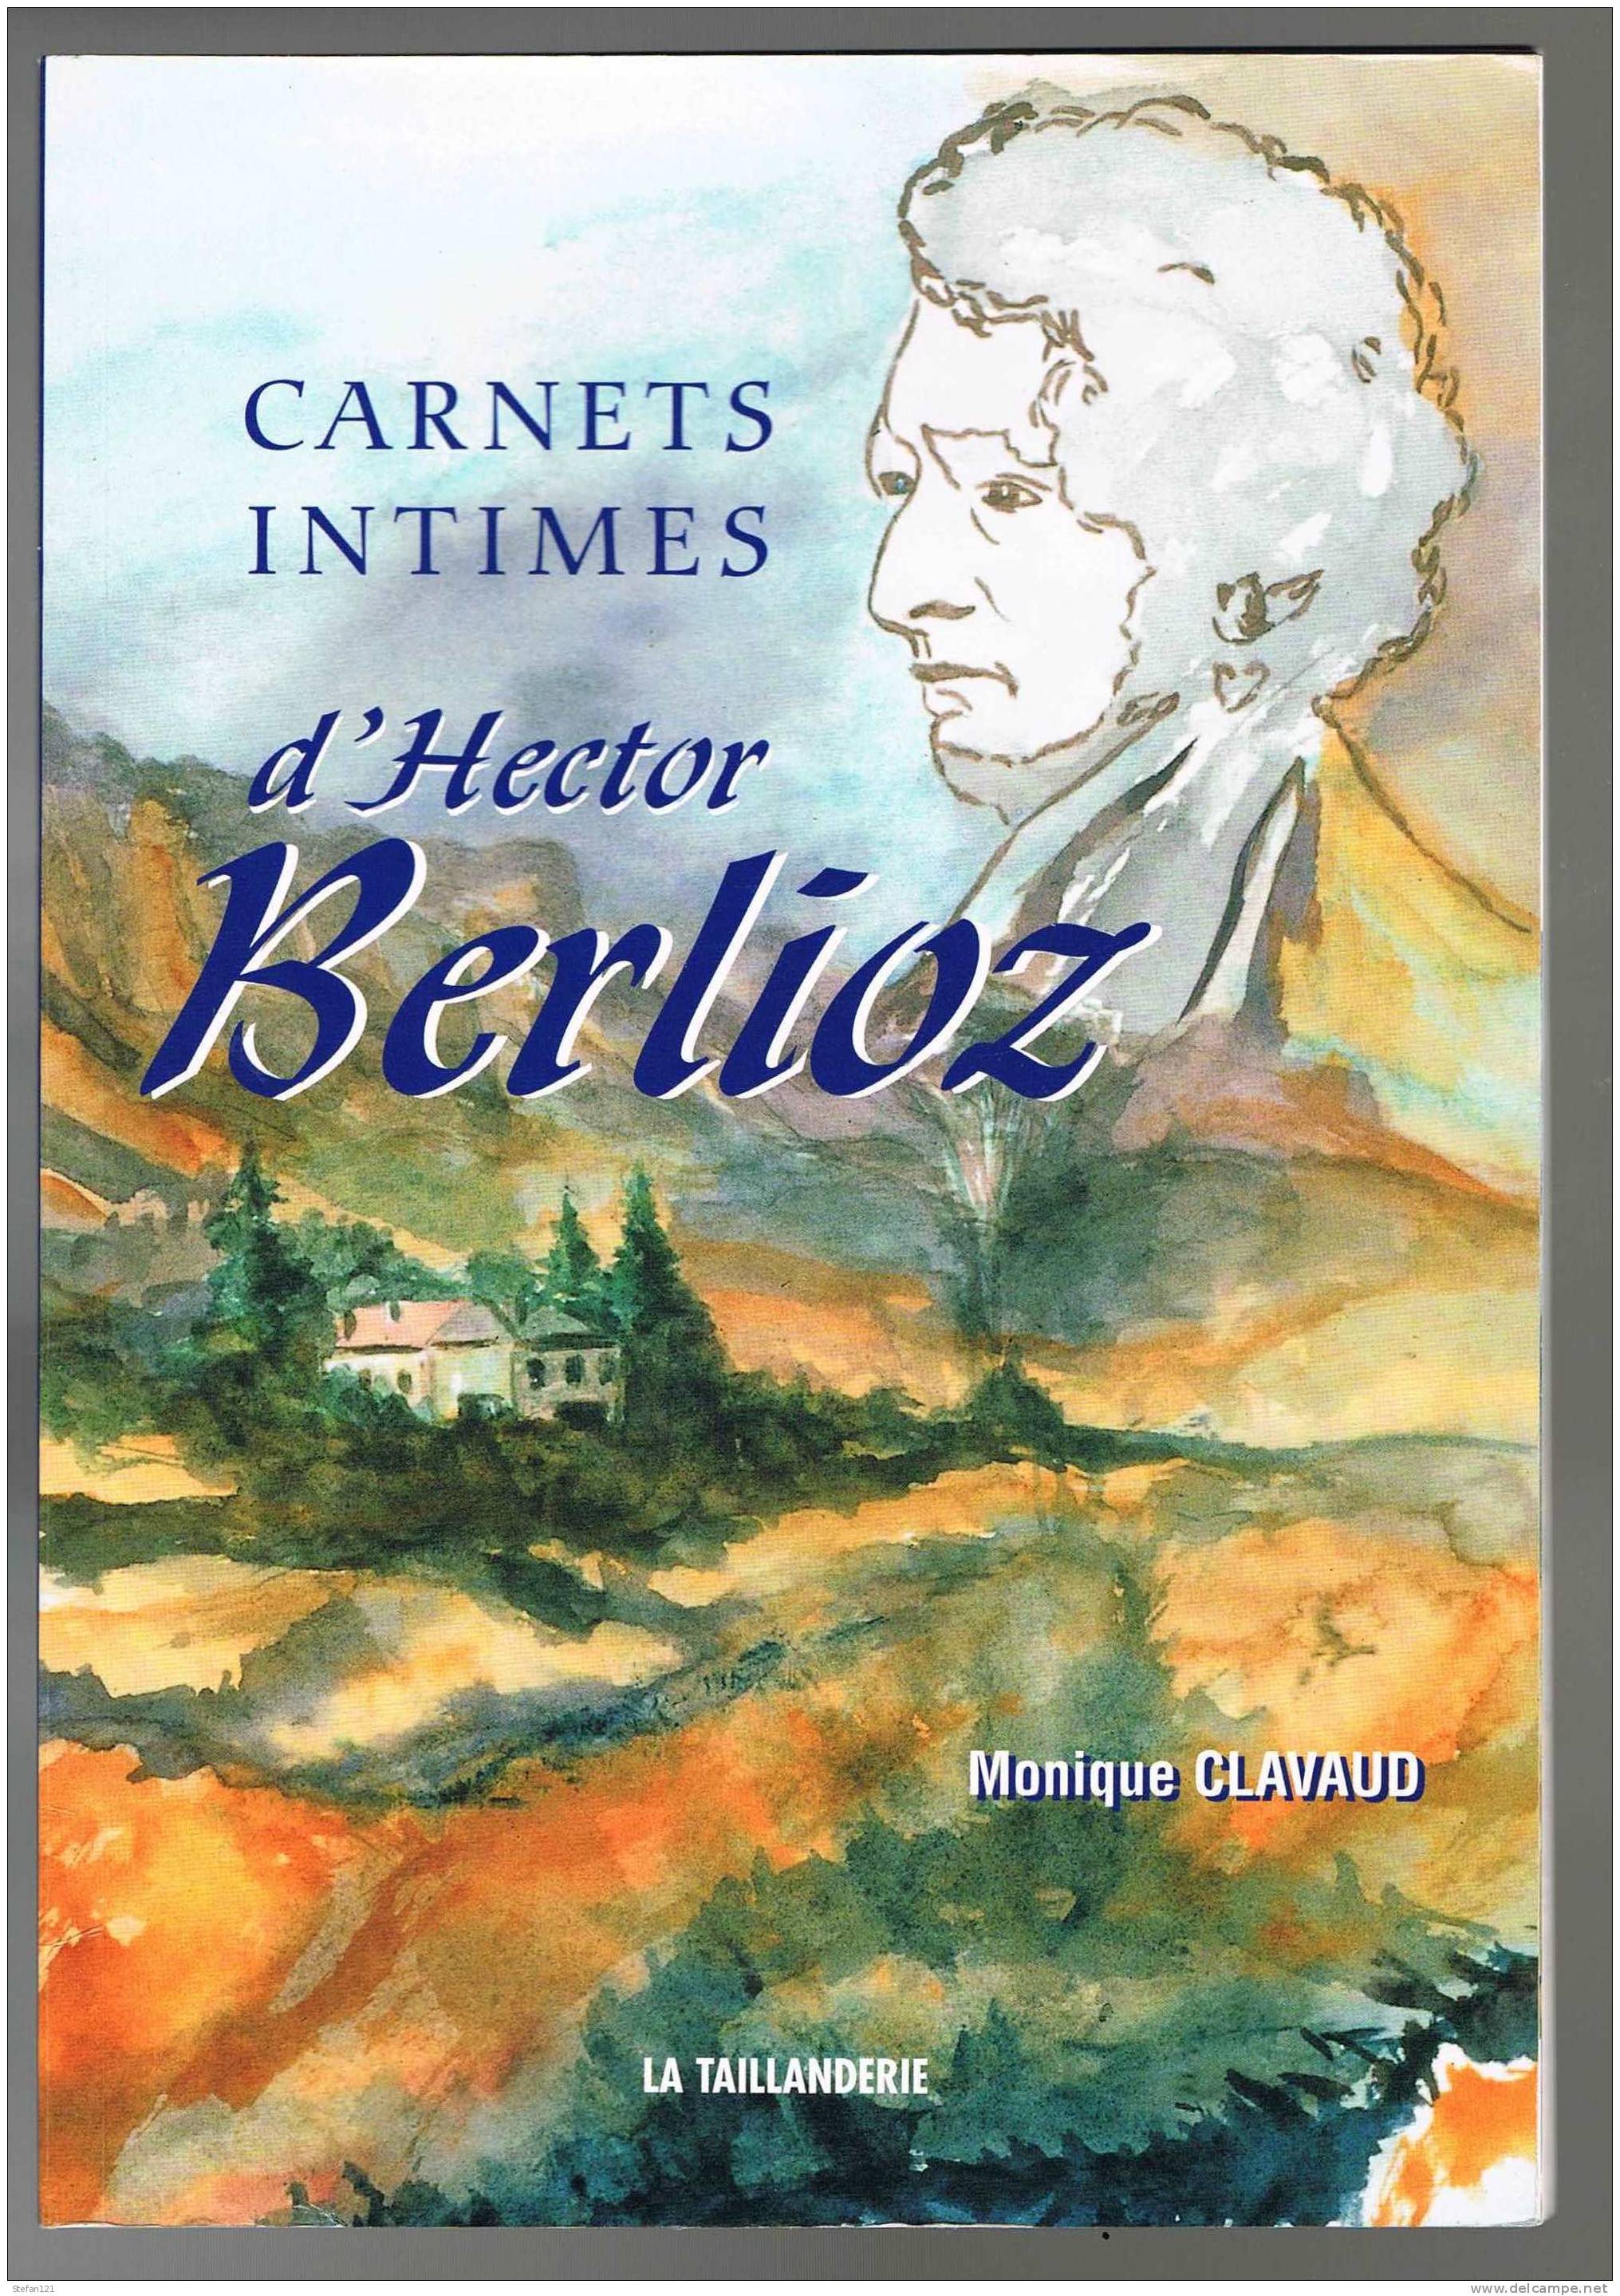 Carnets Intimes D'Hector Berlioz - Monique Clavaud - 2003 -  La Taillanderie - 64 Pages - 23,2 Cm X 16,2 Cm - Musique